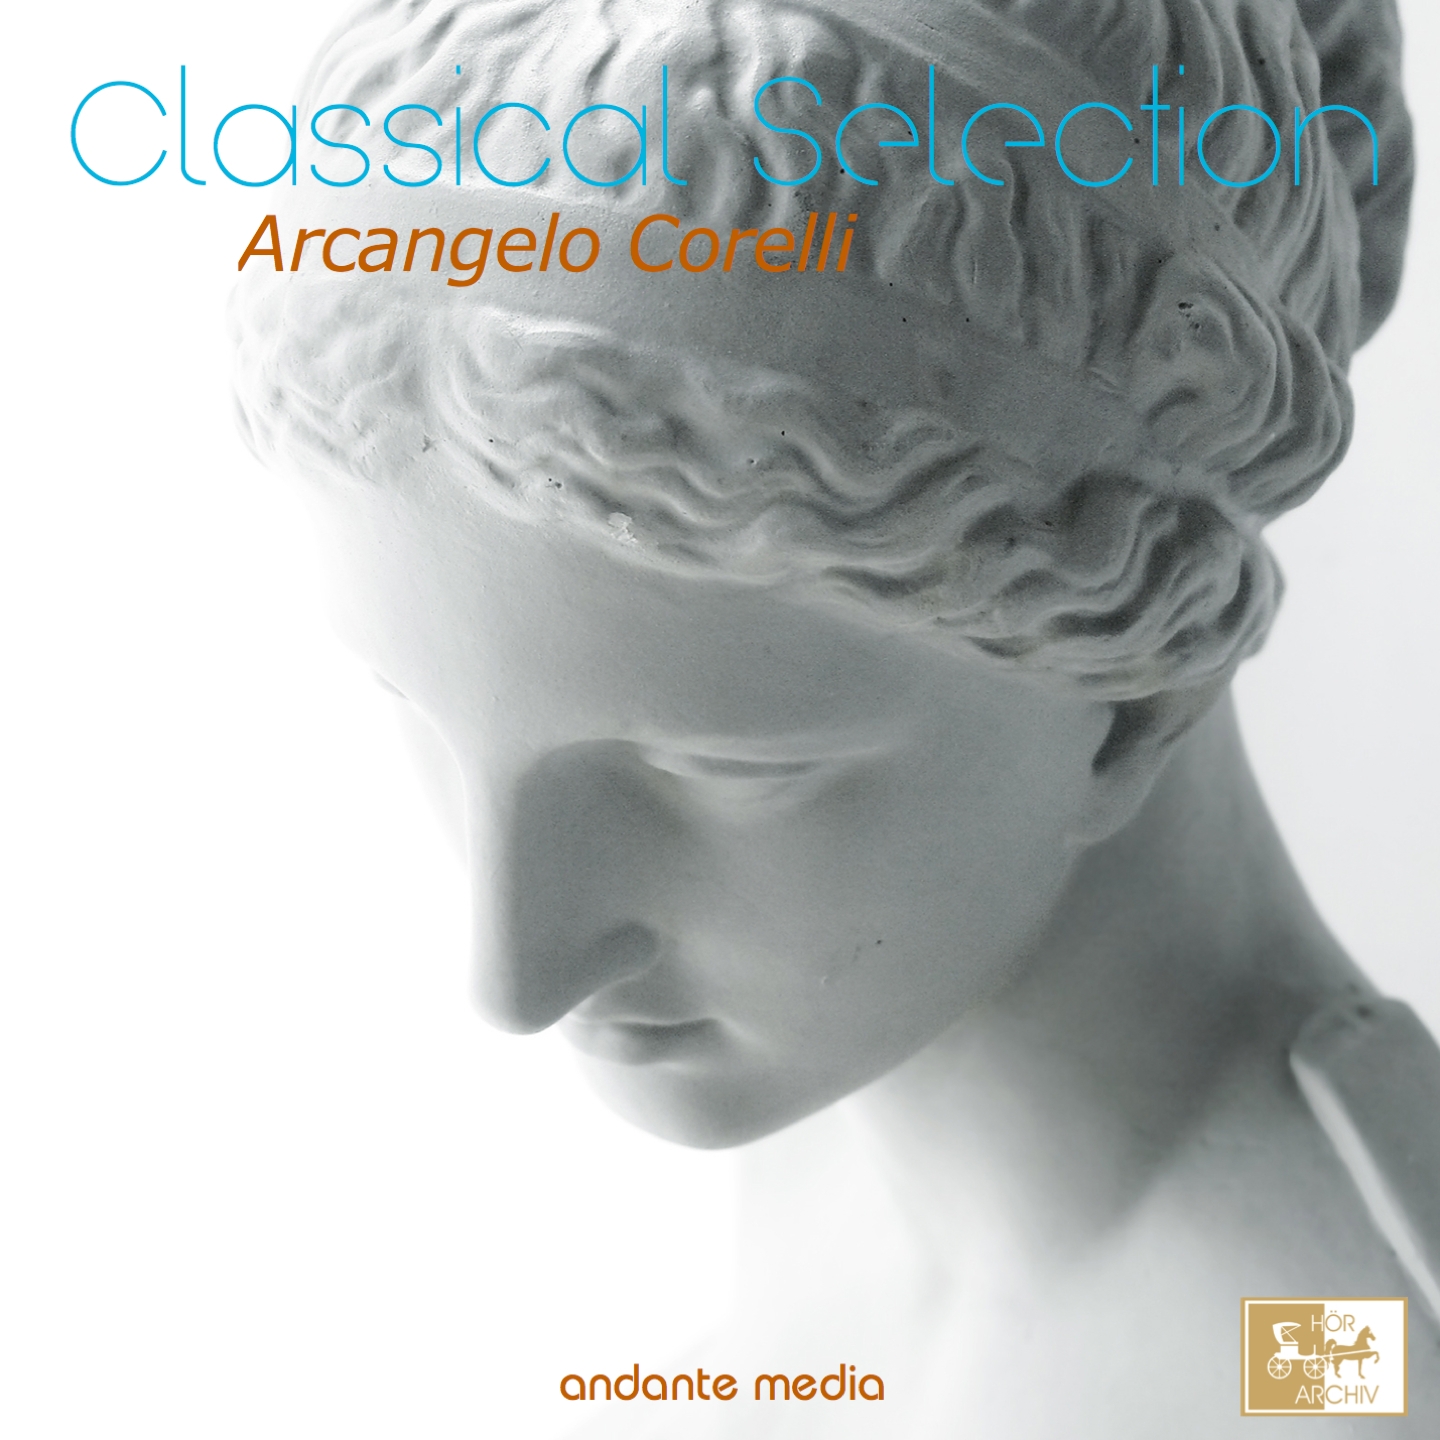 12 Concerti grossi, Op. 6, No. 4 in D Major: I. Adagio - Allegro